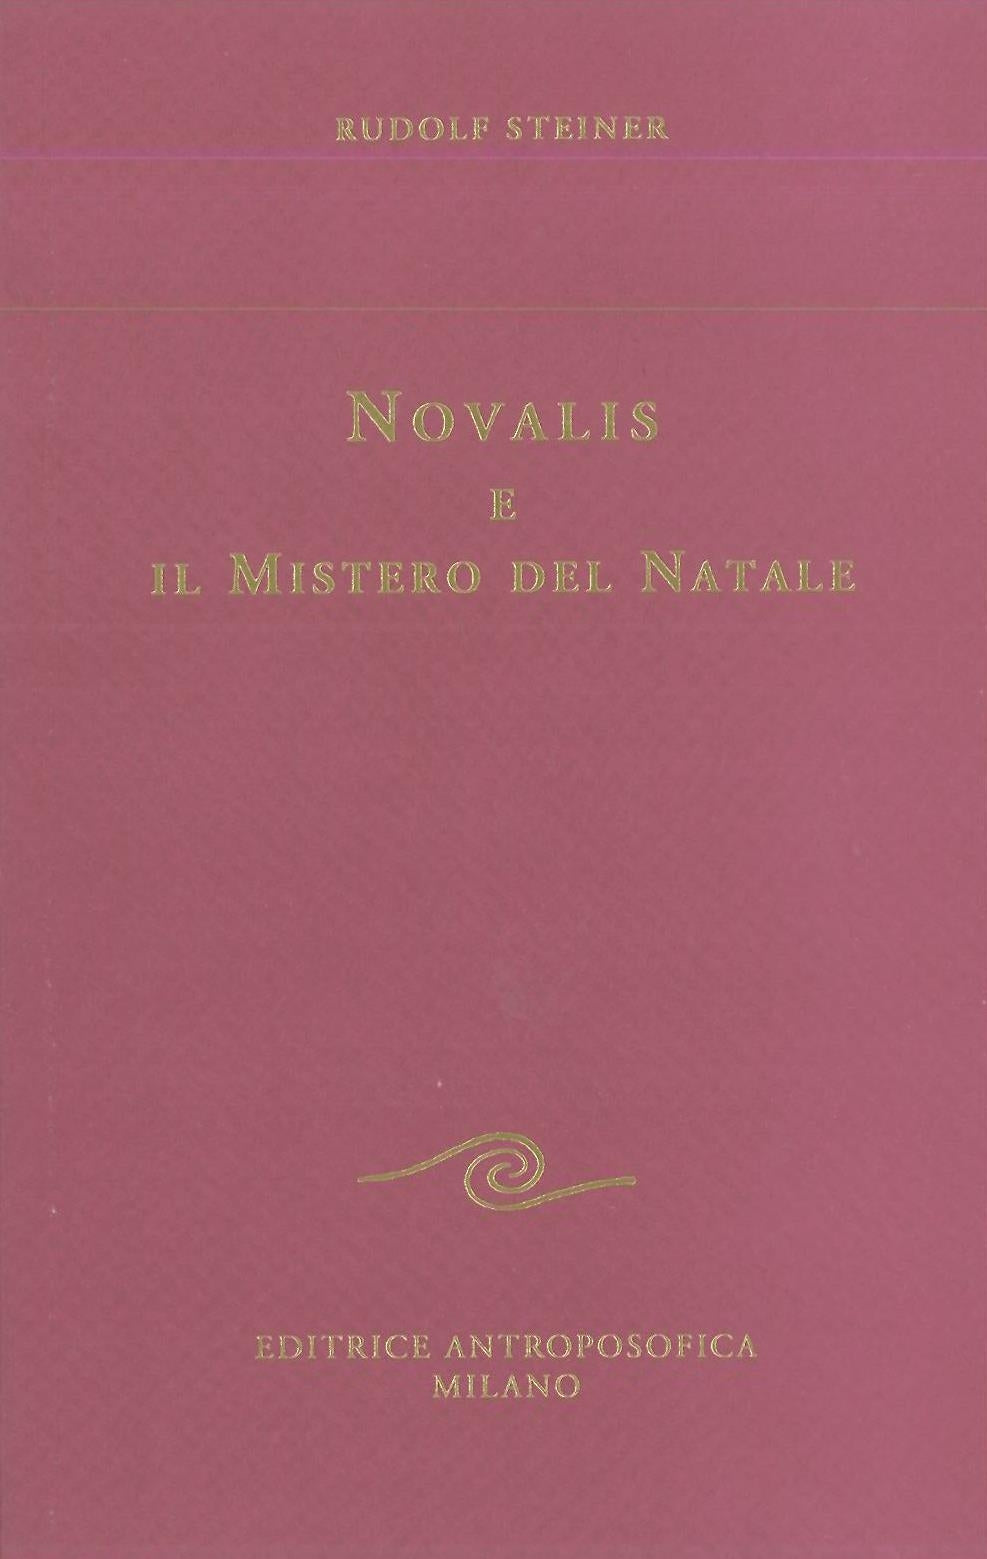 Novalis e il mistero del Natale - Rudolf Steiner